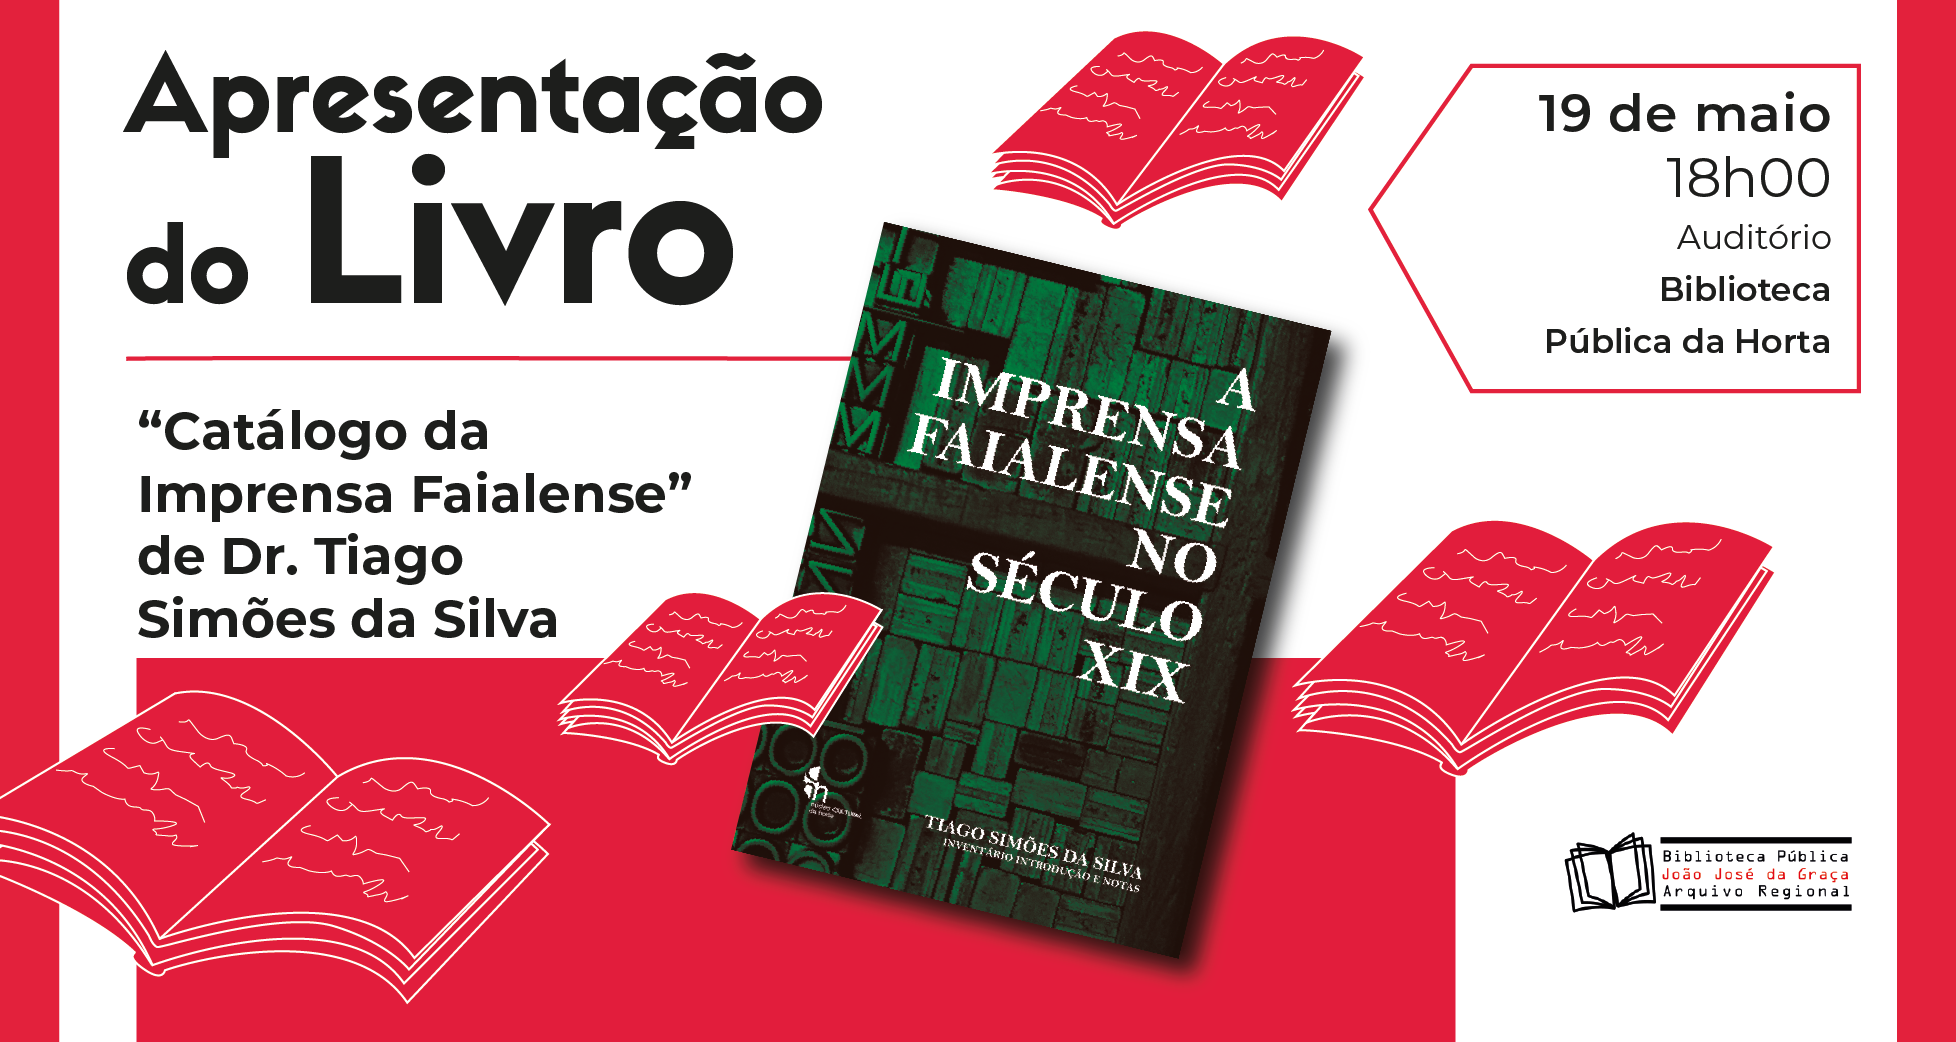 Lançamento do livro “Catálogo da Imprensa Faialense” de Dr. Tiago Simões da Silva